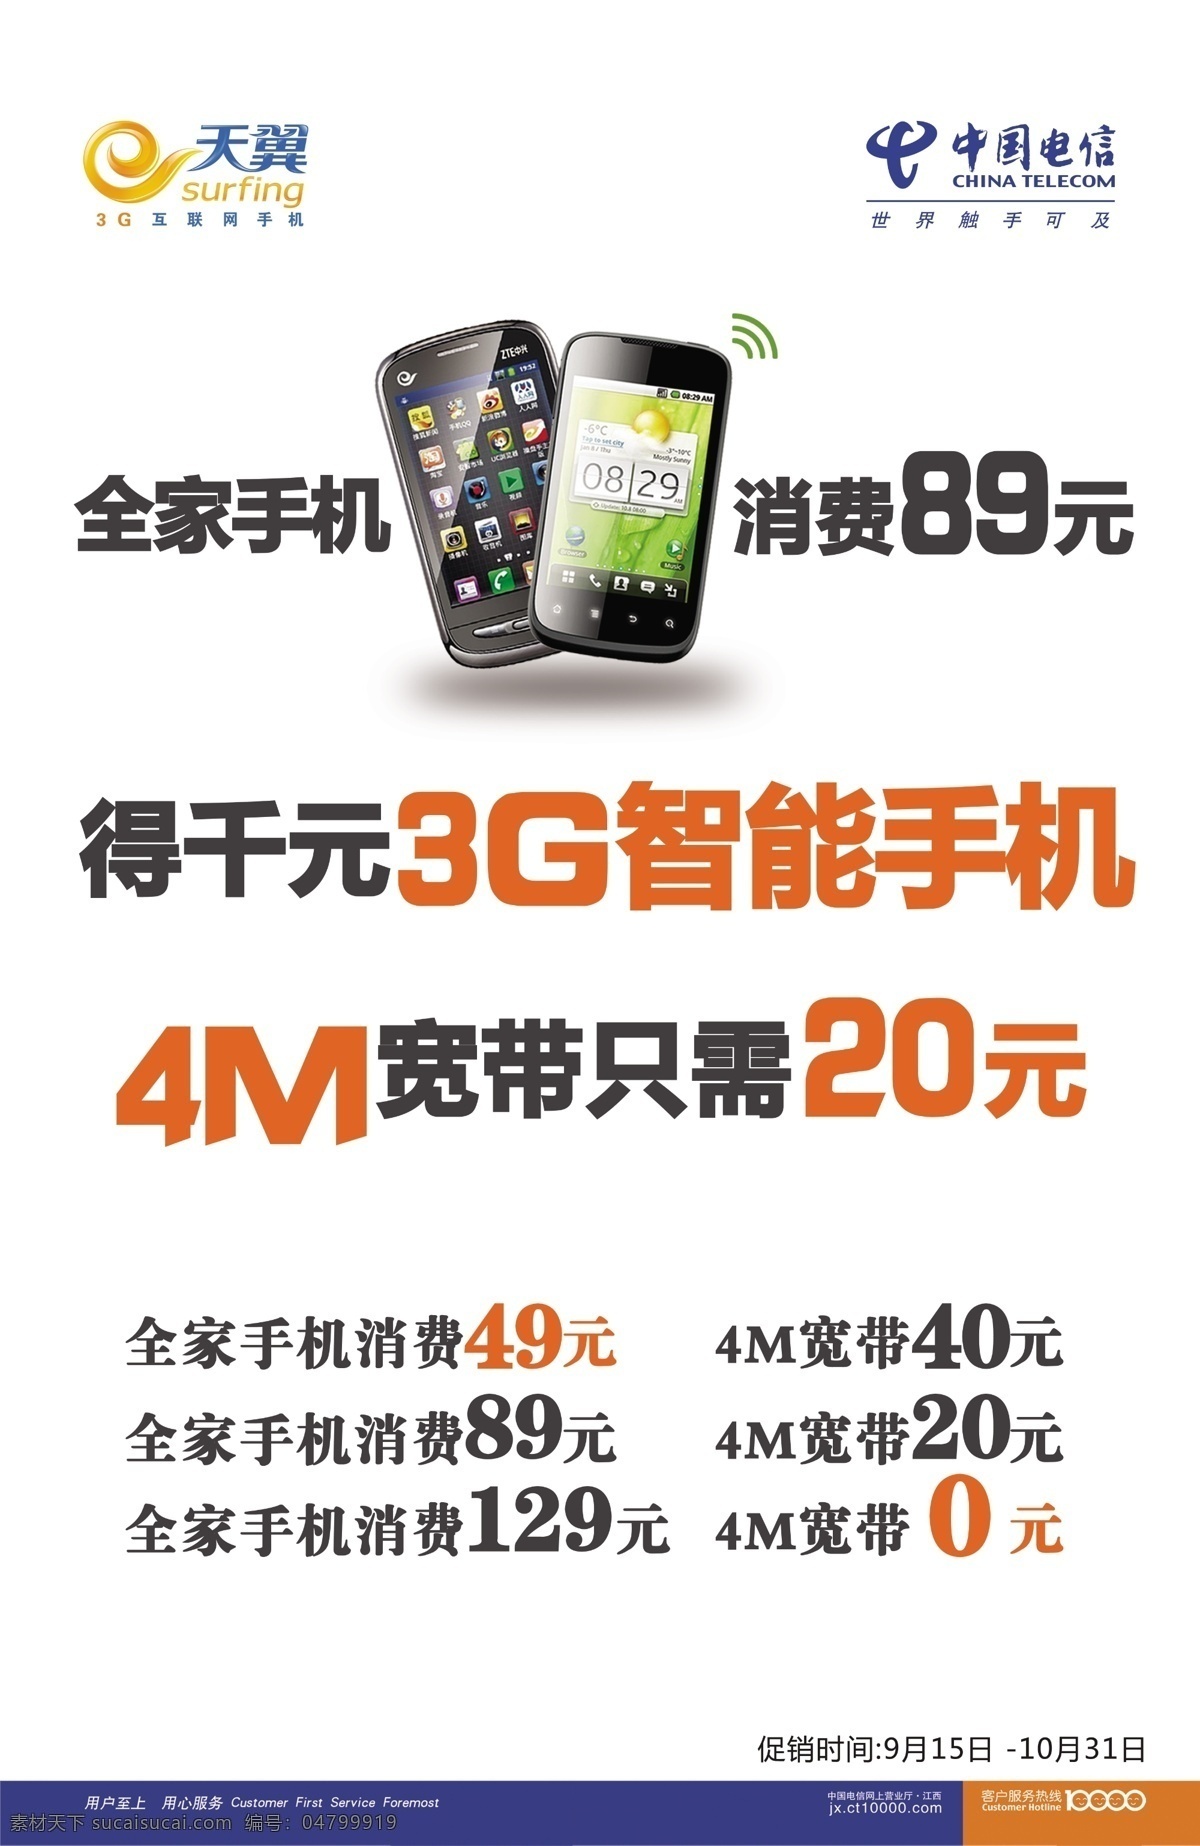 中国电信 宣传海报 电信 广告设计模板 宽带 其他模版 天翼3g 宣传广告 源文件 智能手机